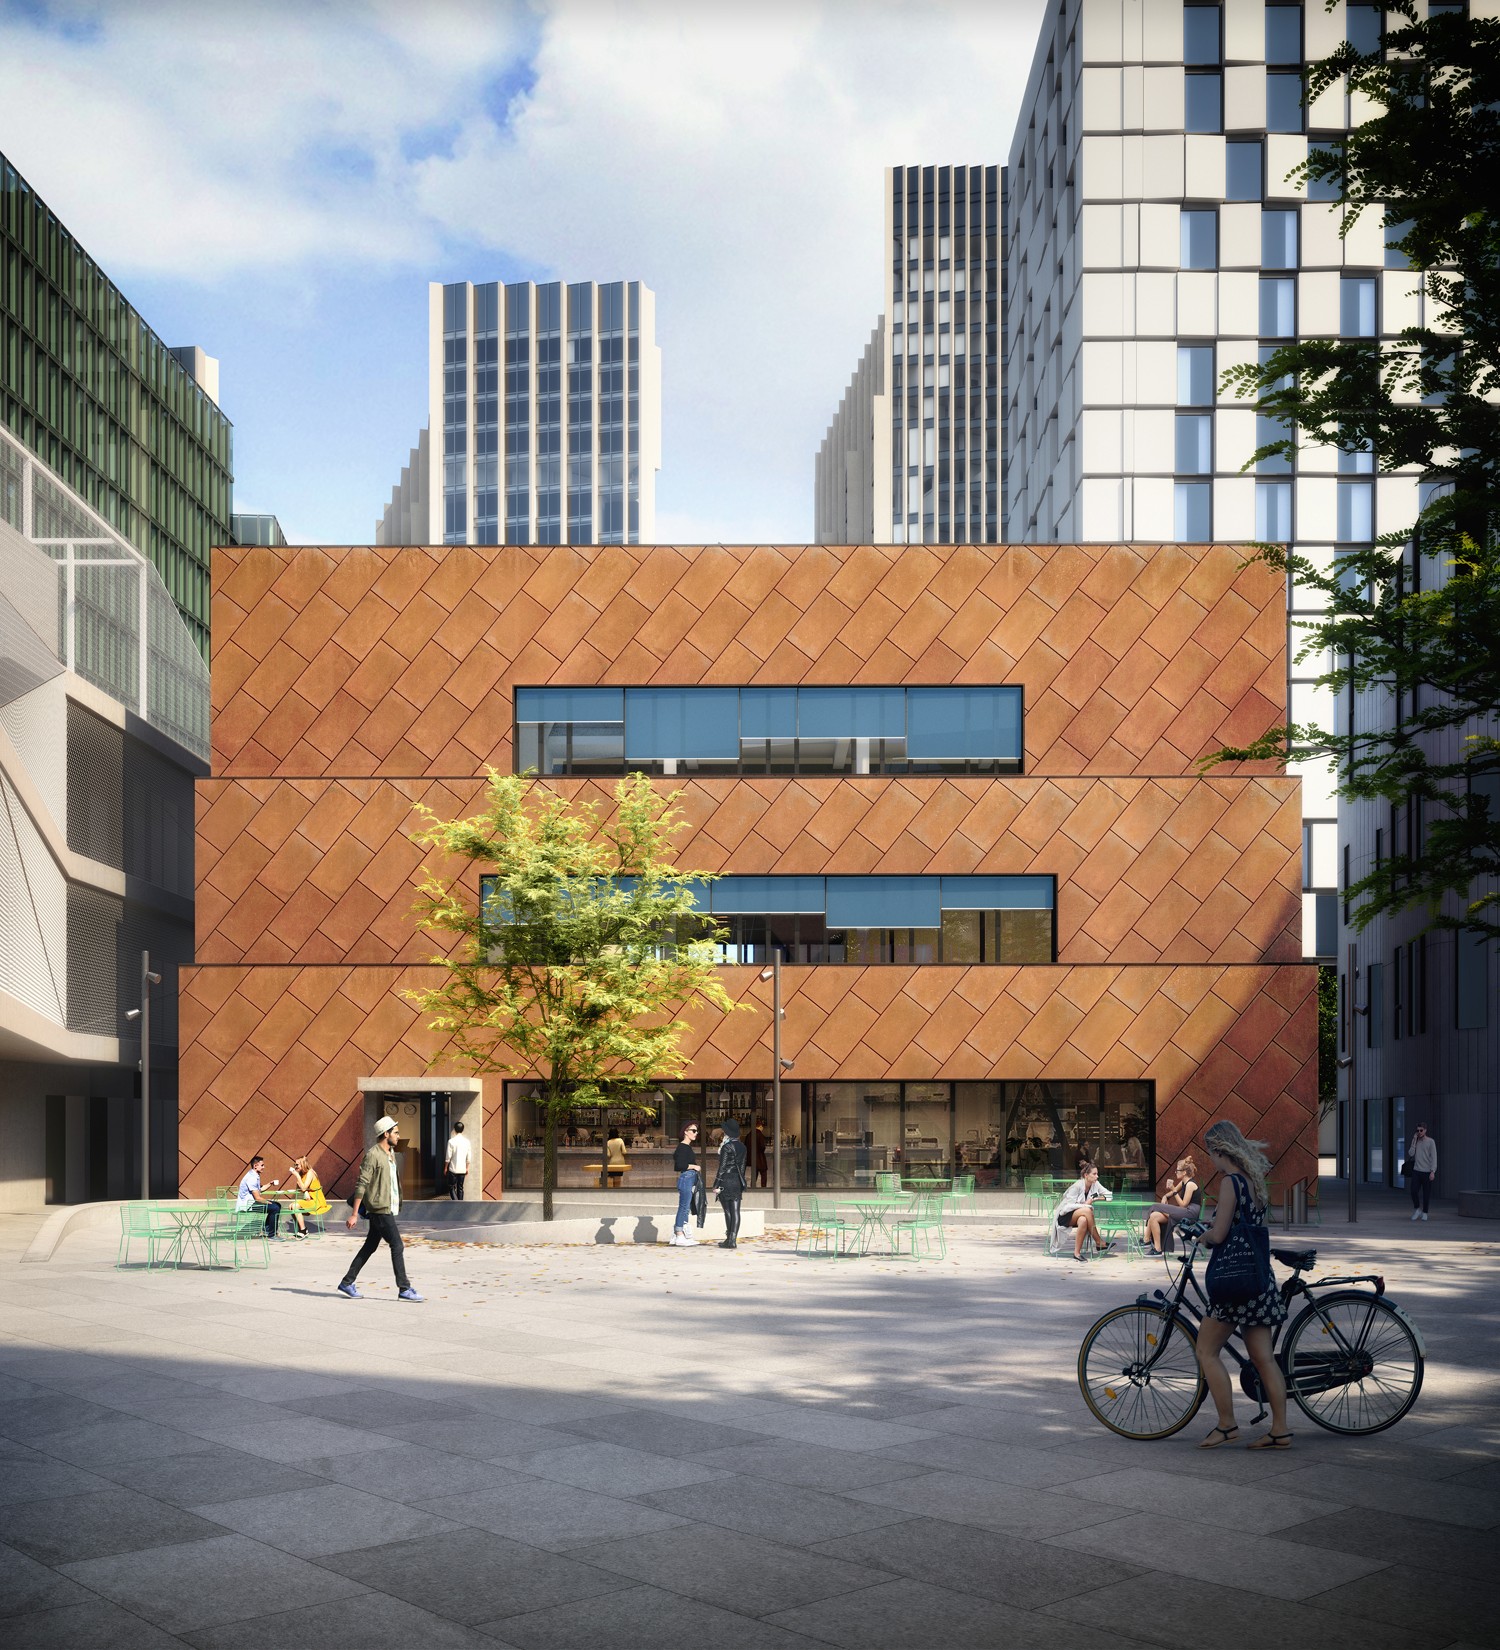 Por dentro do novo Design District de Londres, que será inaugurado em 2020 (Foto: London Design District/Divulgação)